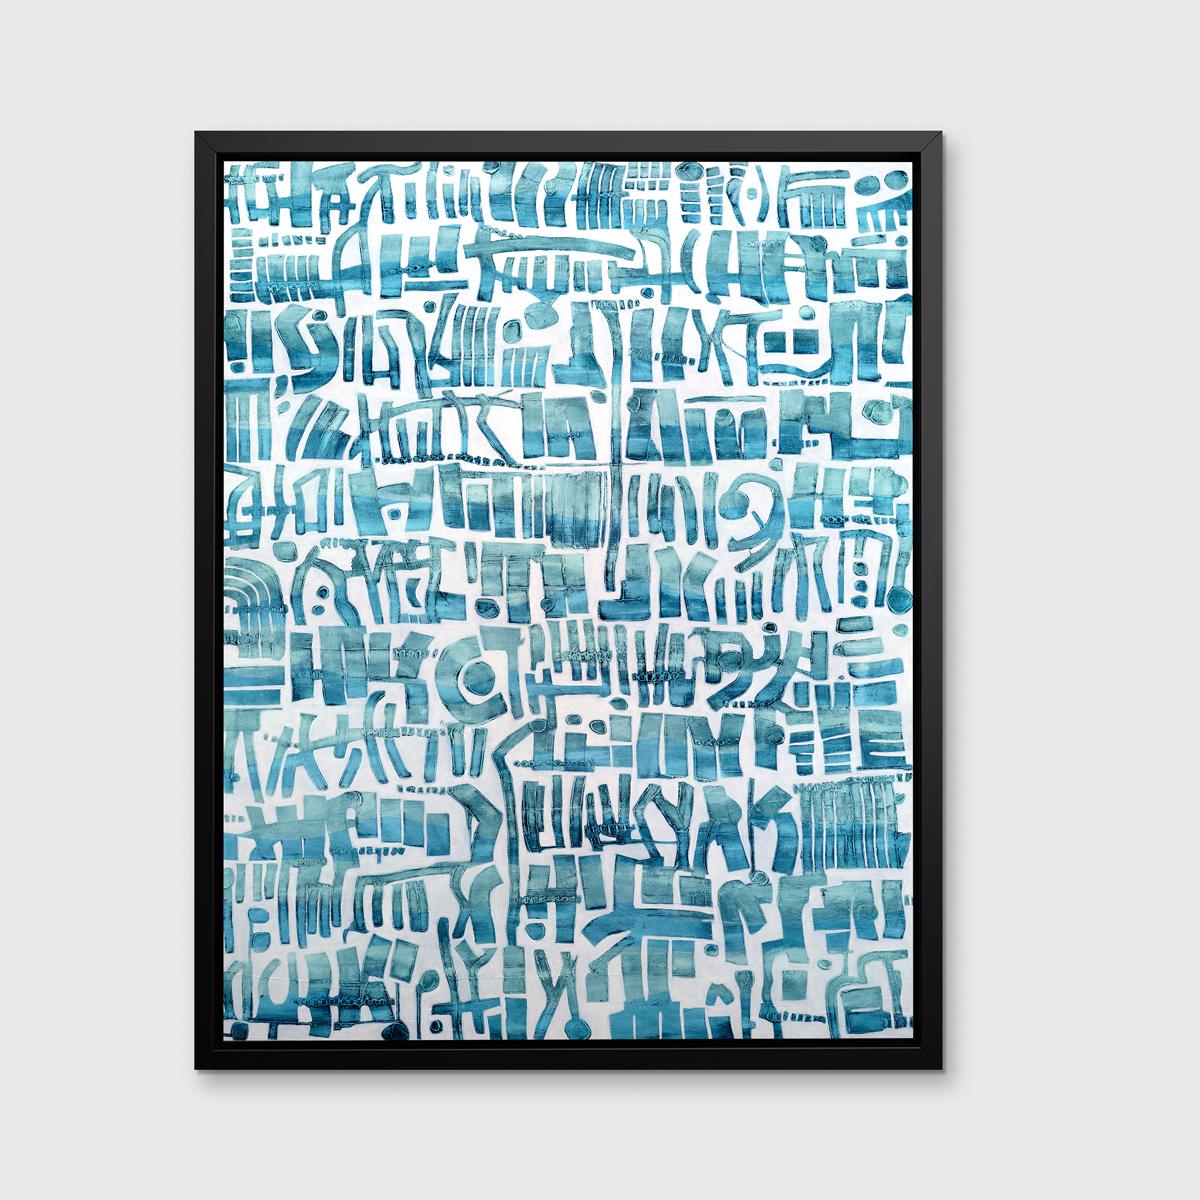 Cette estampe abstraite contemporaine en édition limitée de Sofie Swann présente une palette côtière légère, avec des formes organiques bleues dessinées et empilées les unes à côté des autres sur le fond blanc. Il s'agit d'une édition de 95